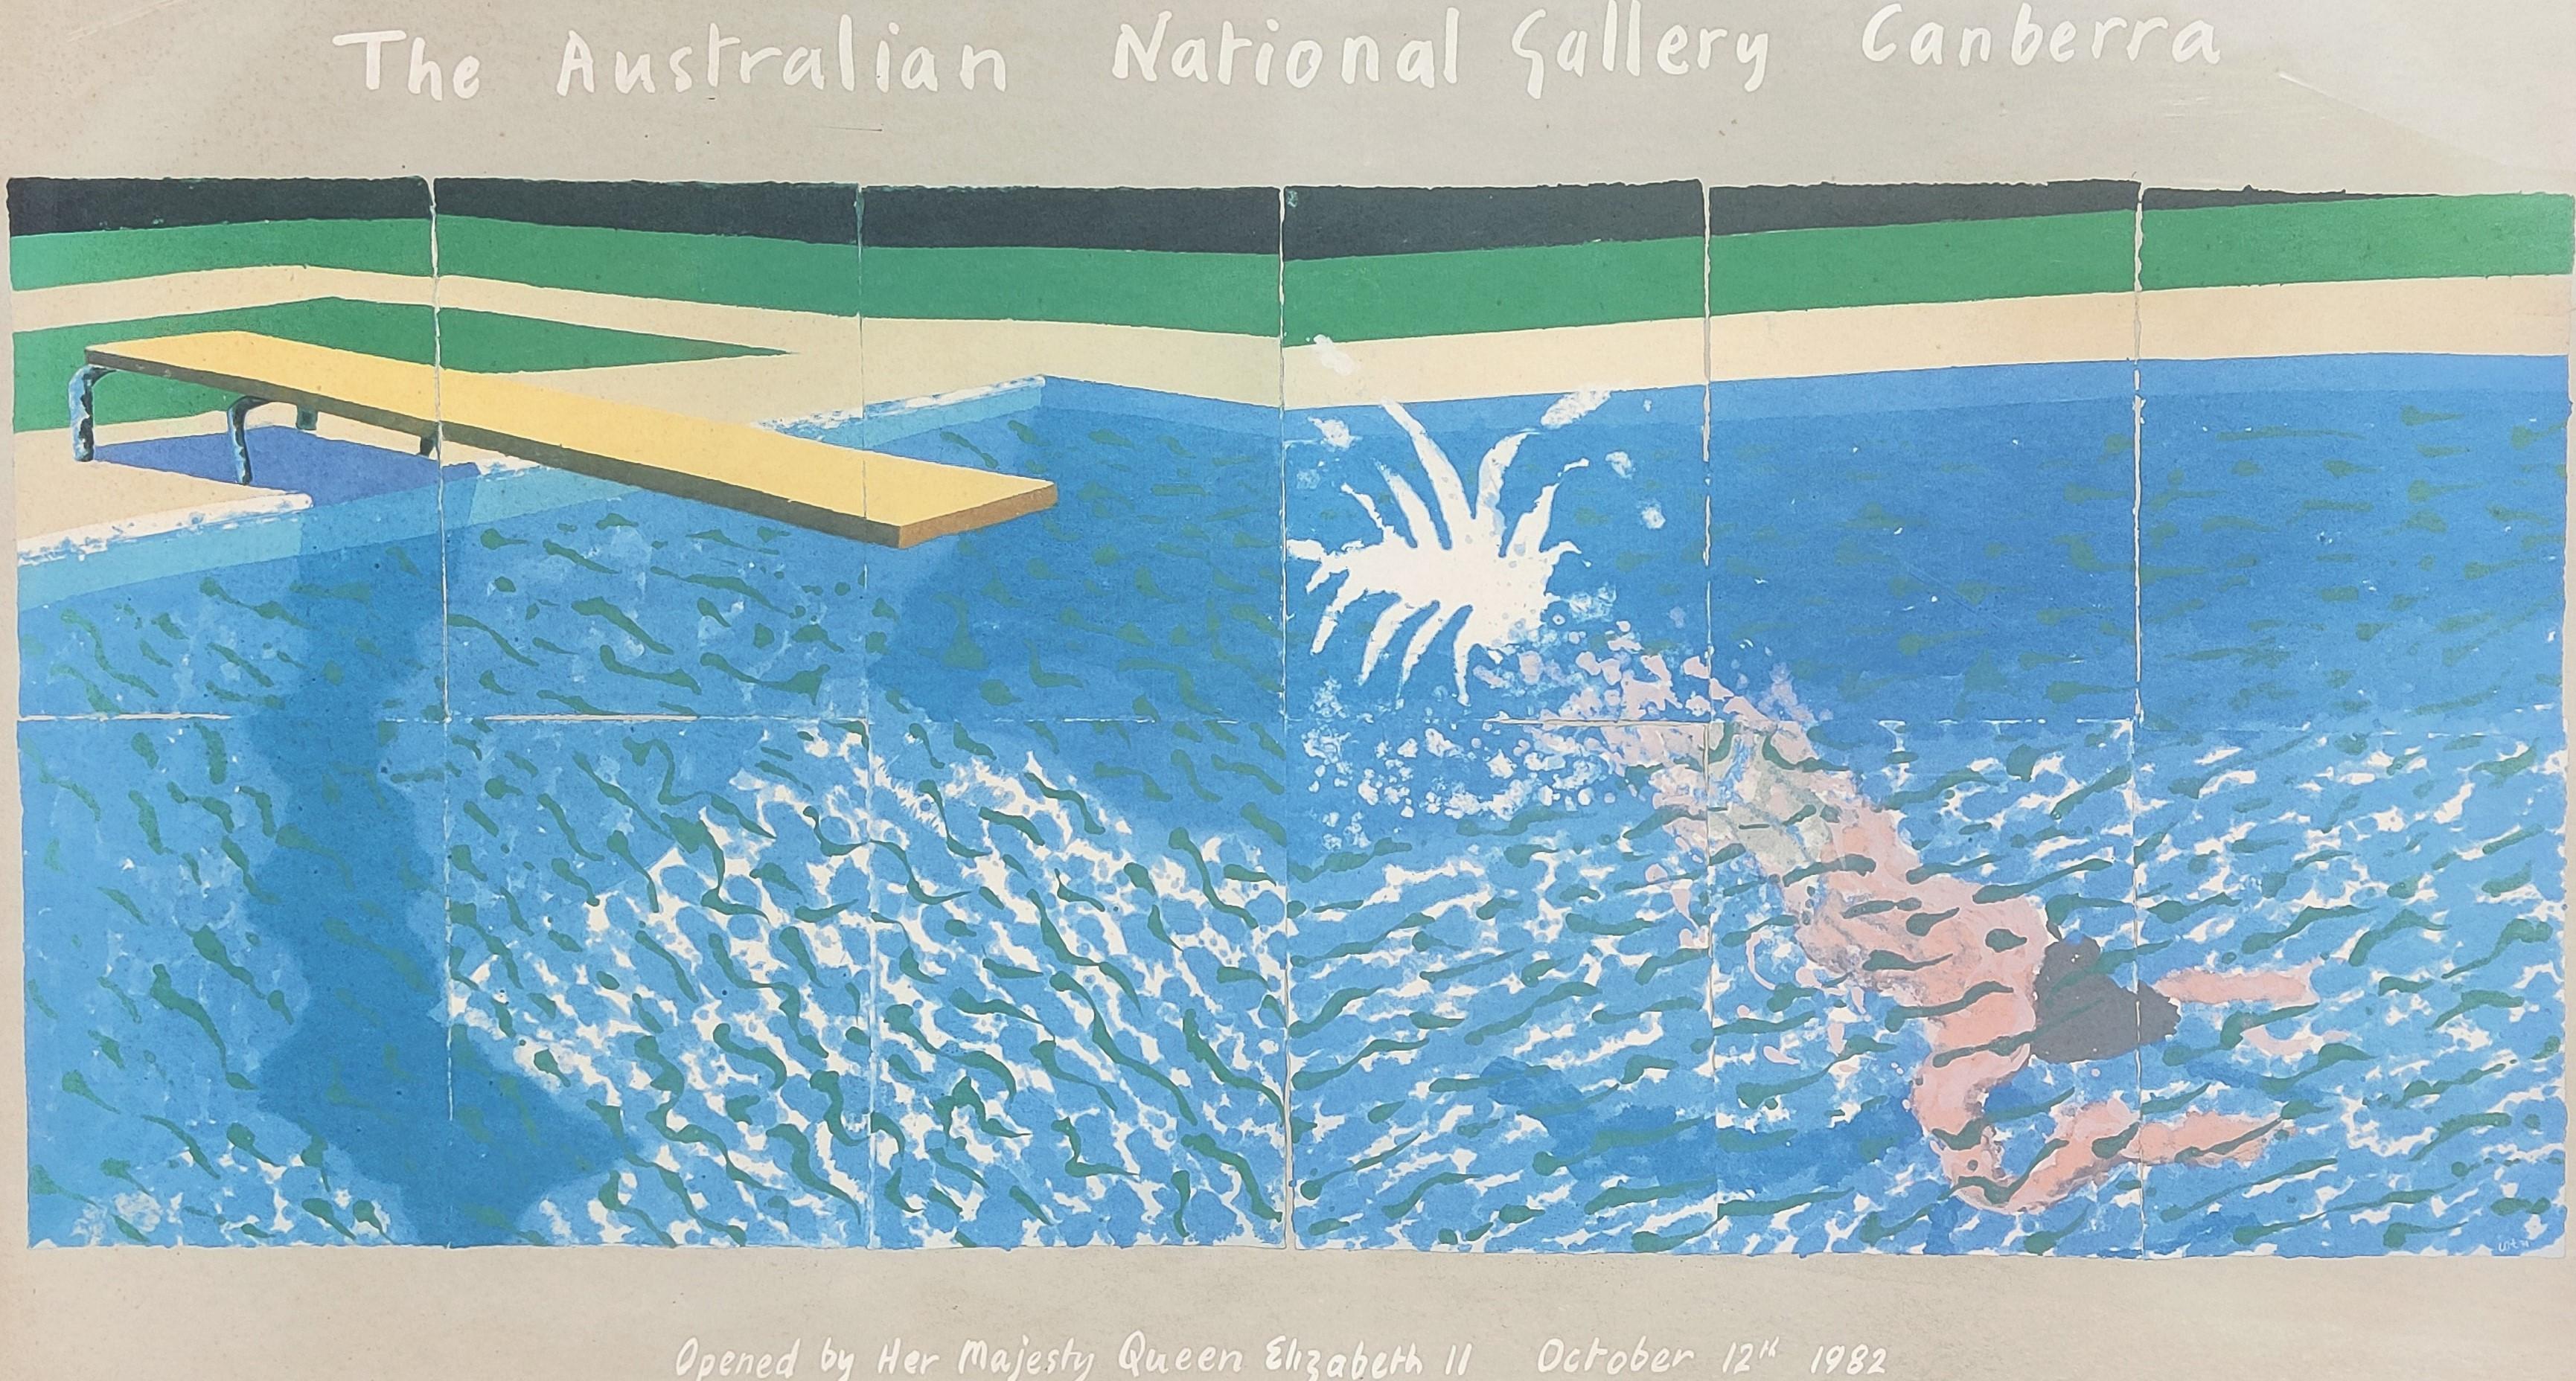 David Hockney 

Ein Taucher (Plakat der Australischen Nationalgalerie), 1982

Druck auf dem dicken Velinpapier

81 x 134 cm 

Es ist ungerahmt.

Montiert auf dem Brett